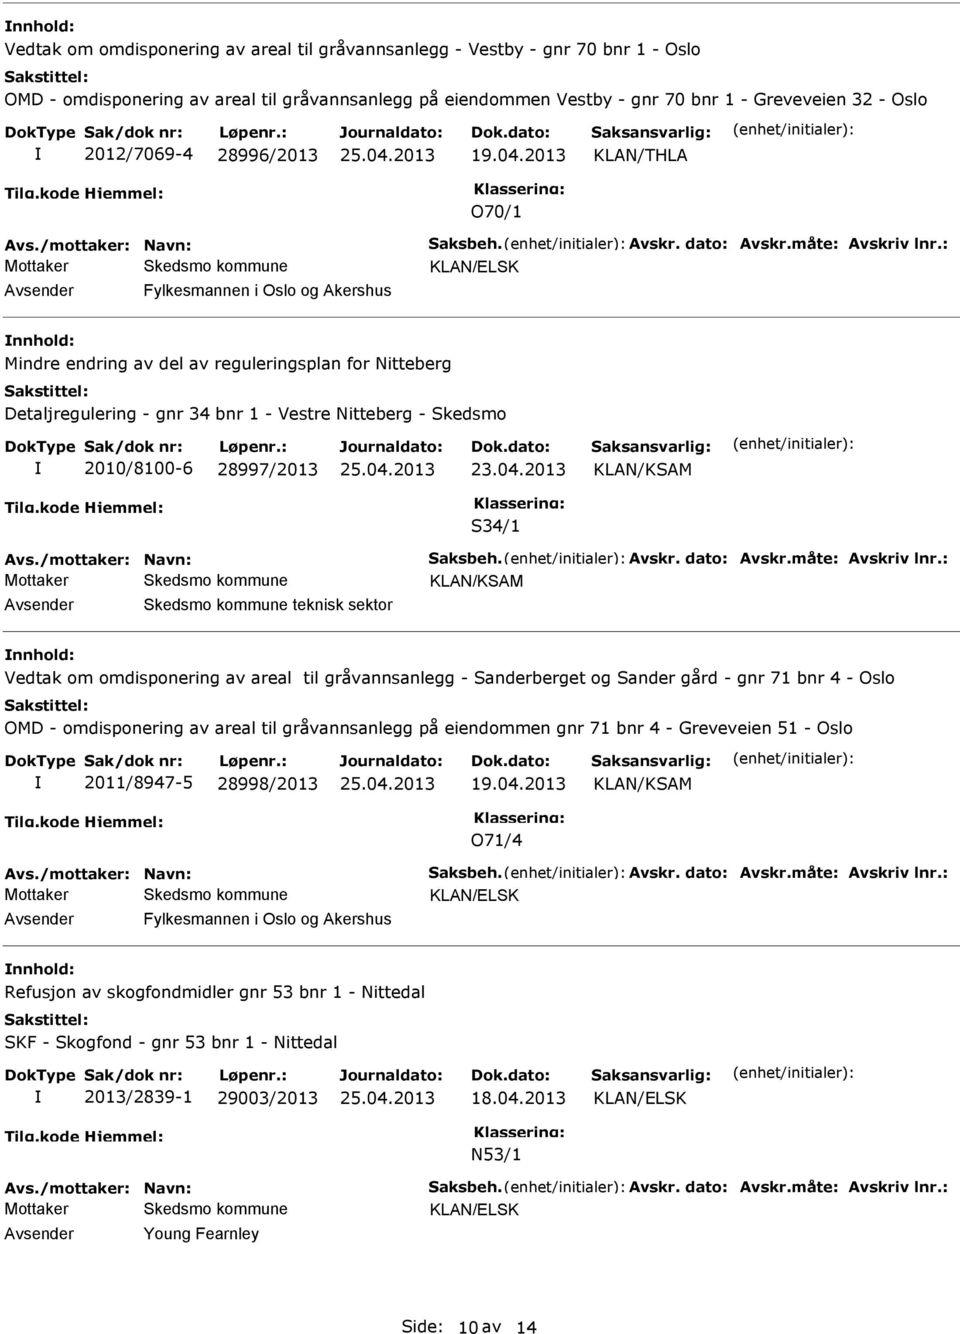 : Fylkesmannen i Oslo og Akershus Mindre endring av del av reguleringsplan for Nitteberg Detaljregulering - gnr 34 bnr 1 - Vestre Nitteberg - Skedsmo 2010/8100-6 28997/2013 S34/1 Avs.